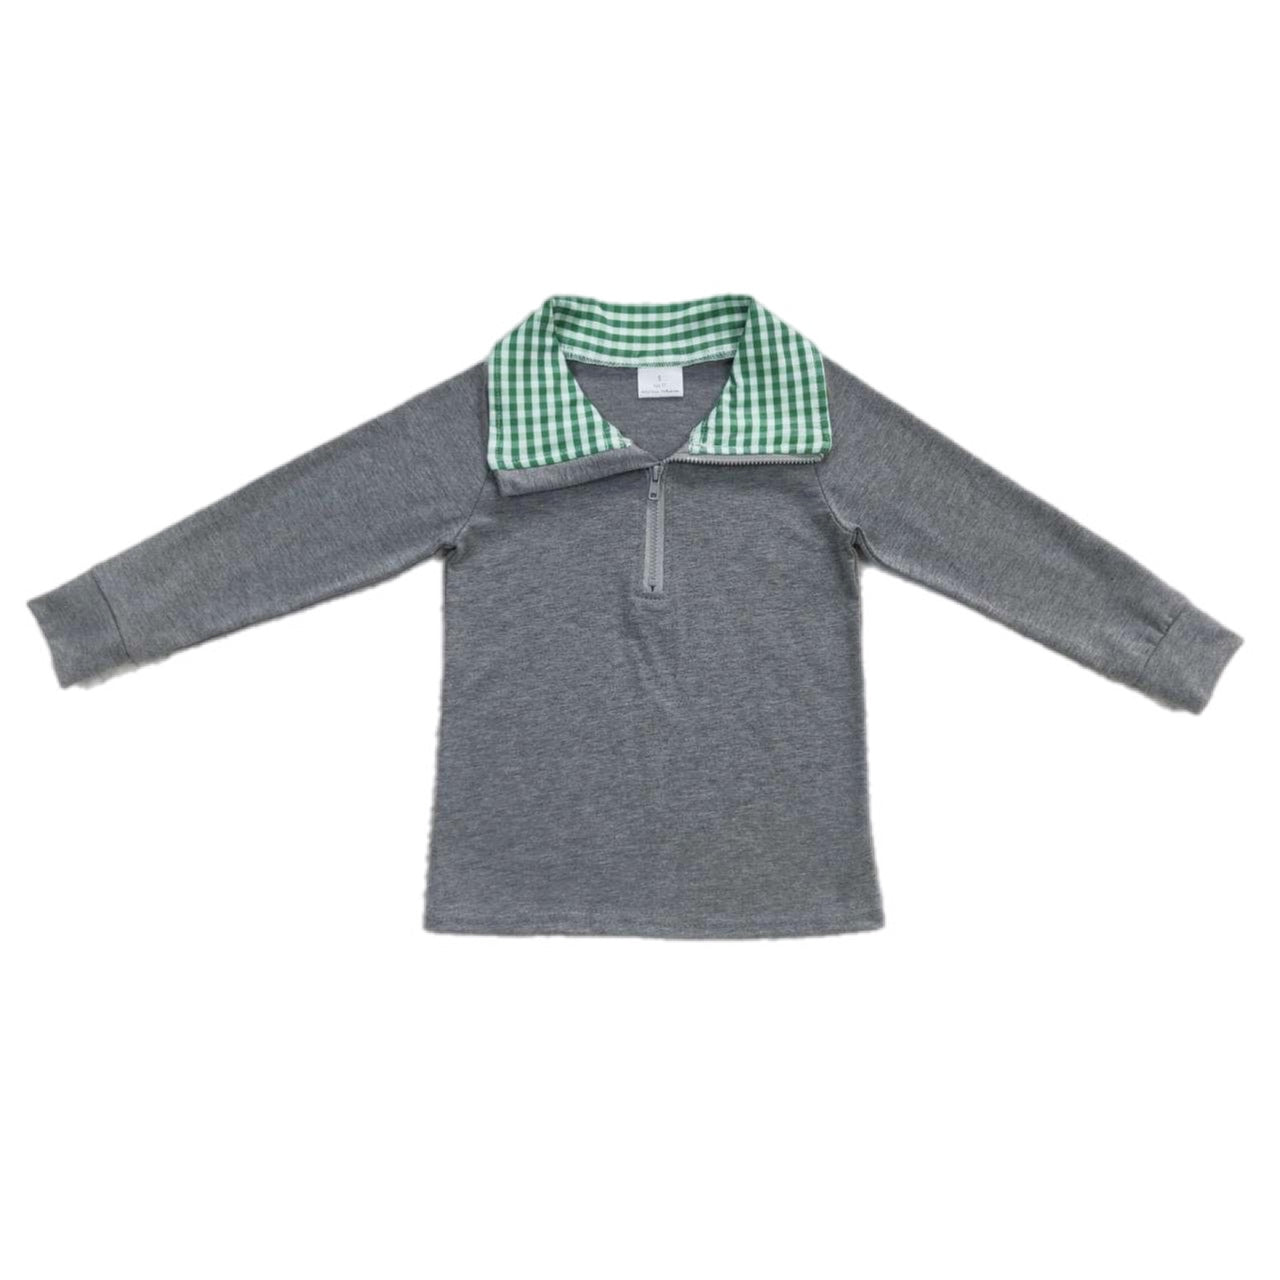 ᴡᴇᴇᴋʟʏ ᴘʀᴇ ᴏʀᴅᴇʀ Pullover- Grey with Green Plaid Quarter Zip